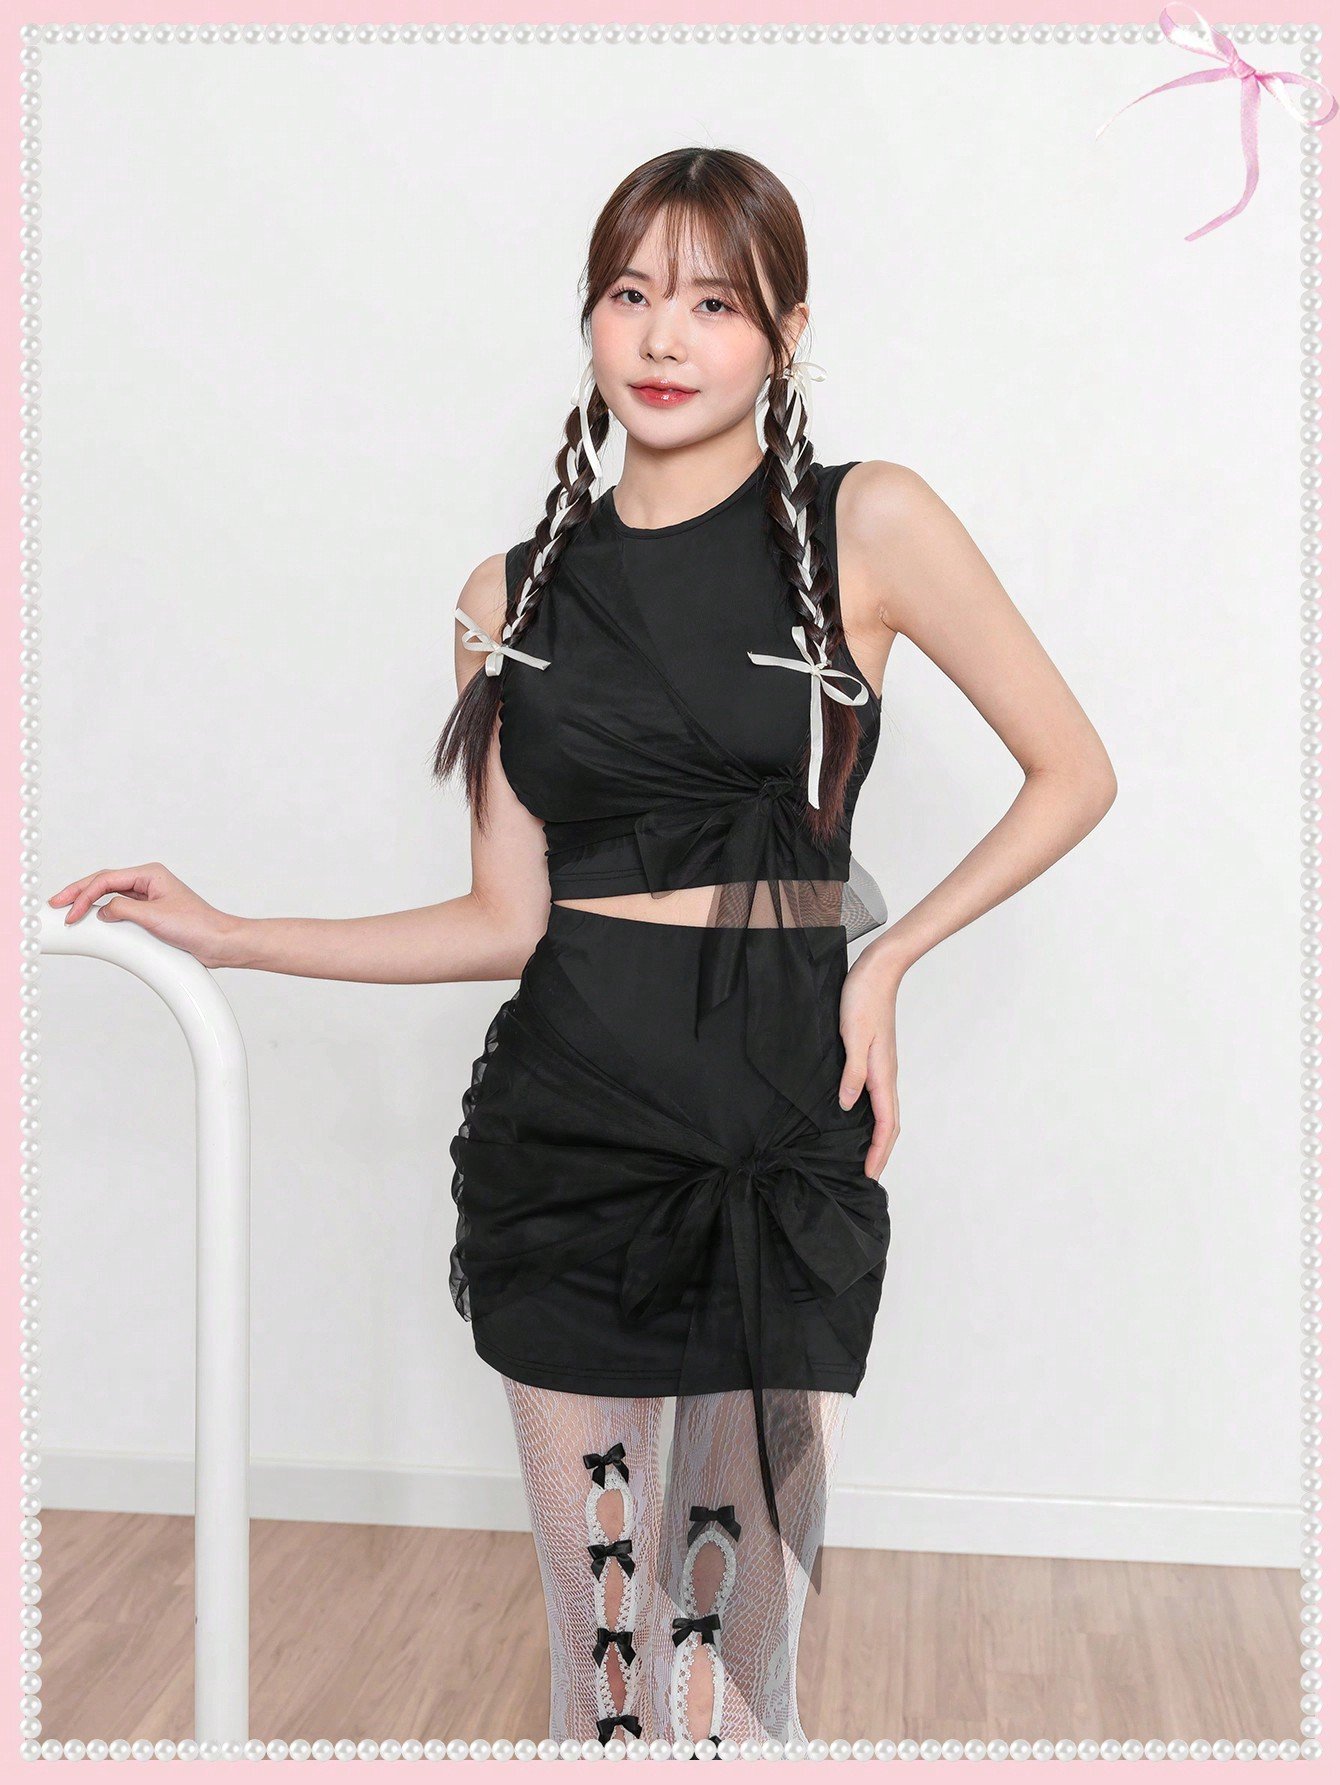 SHEIN Neu コケット夏ミニスカート&ボディコントップバレエコアレースアップメッシュリボン甘い黒ツーピース衣装